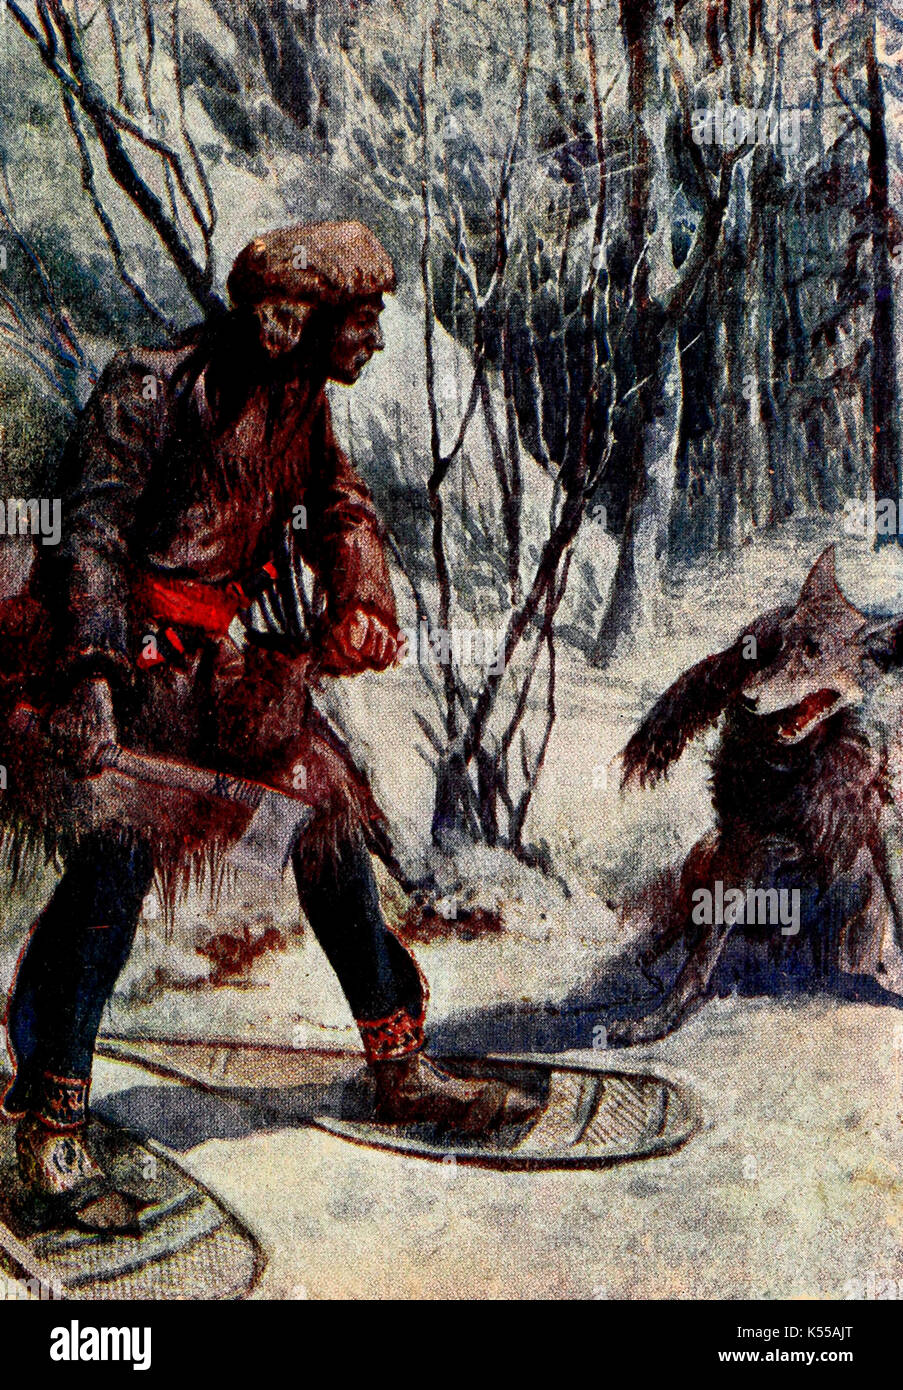 Ein großer Wolf Grenzen in Richtung zu ihm, Landung fast zu seinen Füßen - Pelz Trapper angegriffen wurde, um 1700 Stockfoto